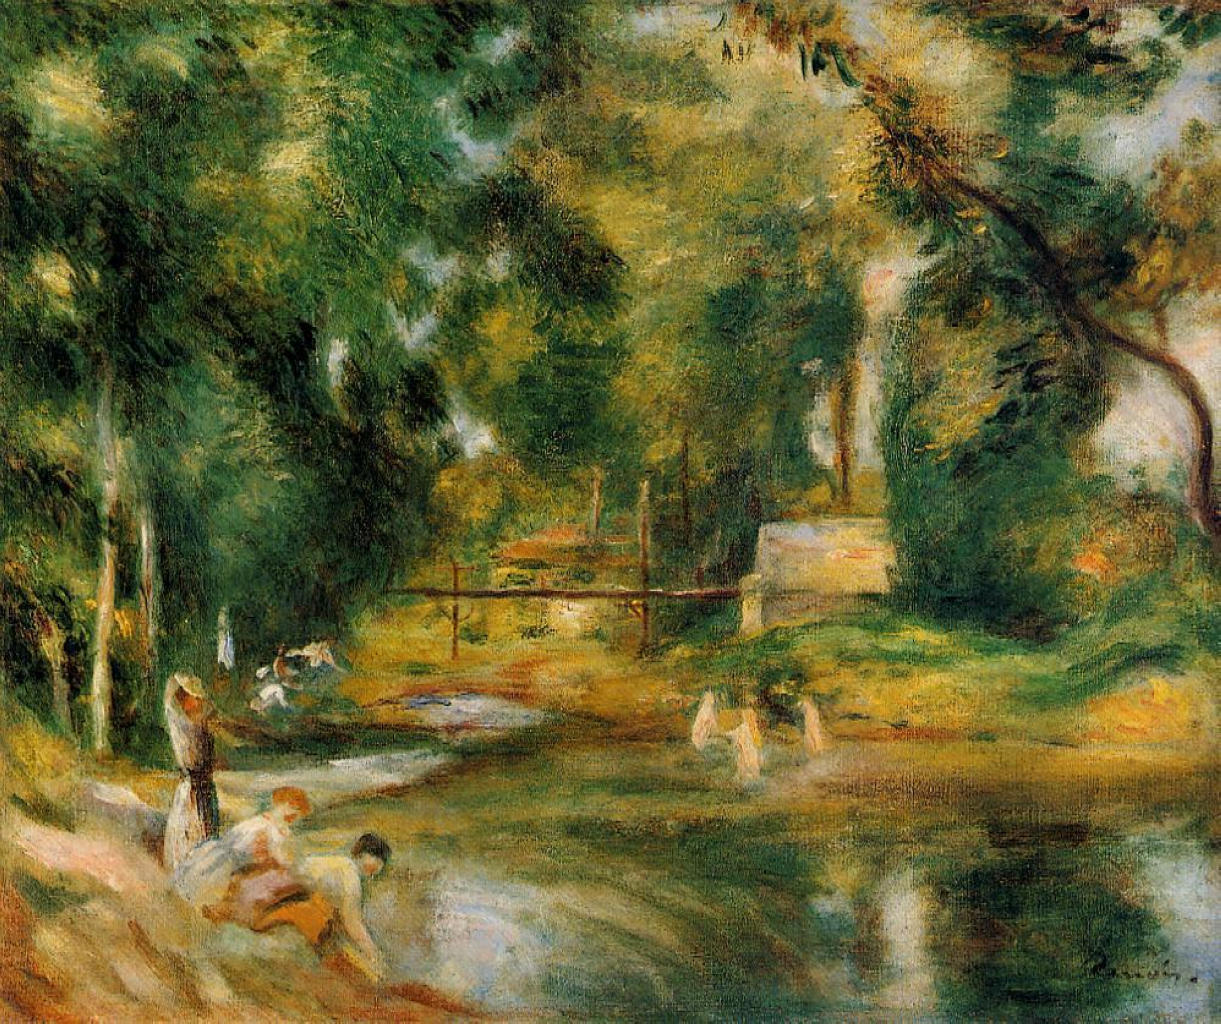 Pierre+Auguste+Renoir-1841-1-19 (483).jpg